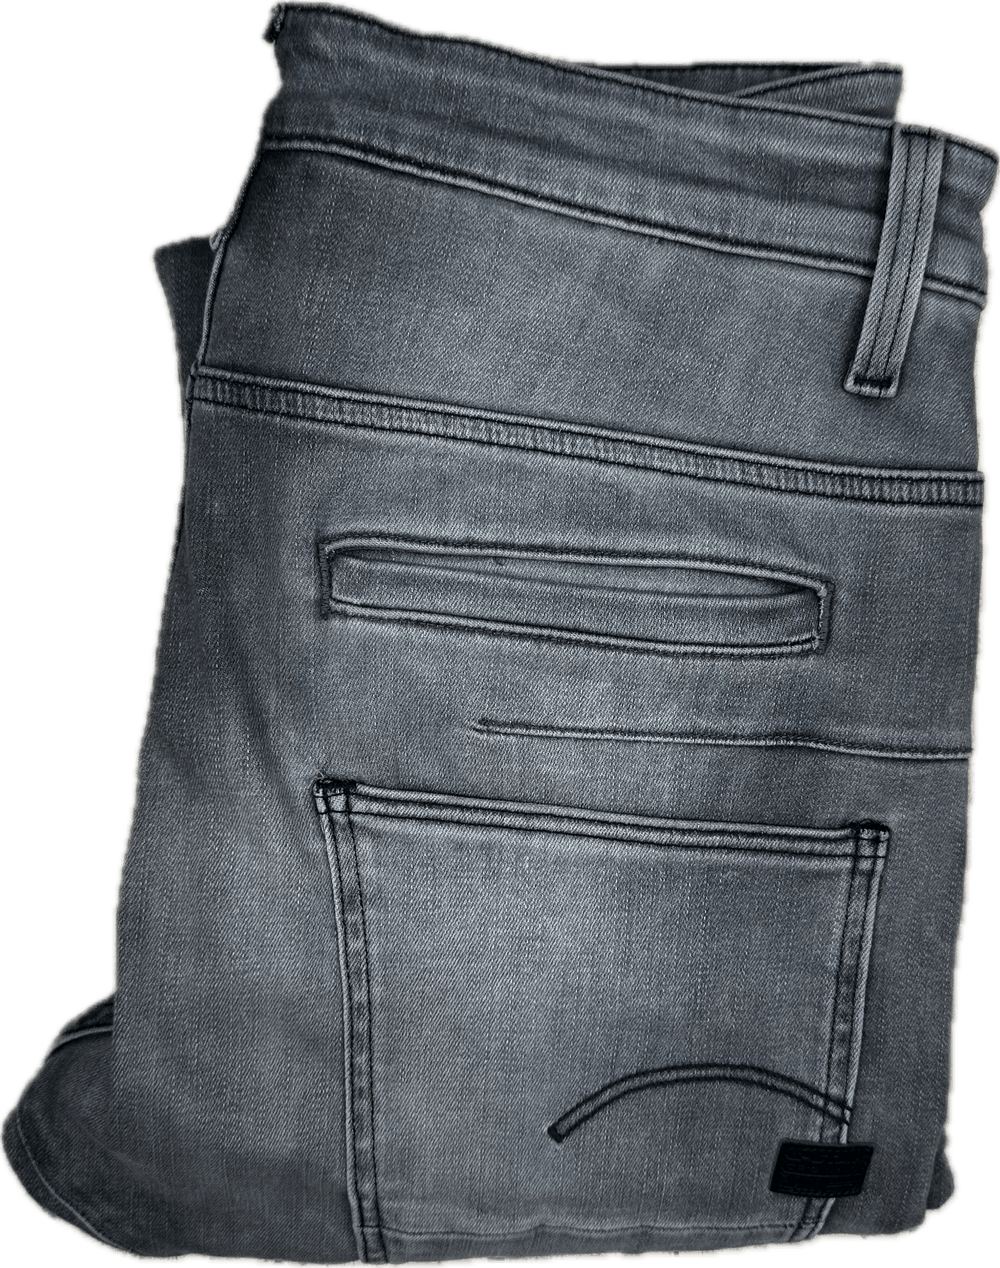 G Star Raw D-STAQ Slim Stretch Jeans -Size 29S - Jean Pool